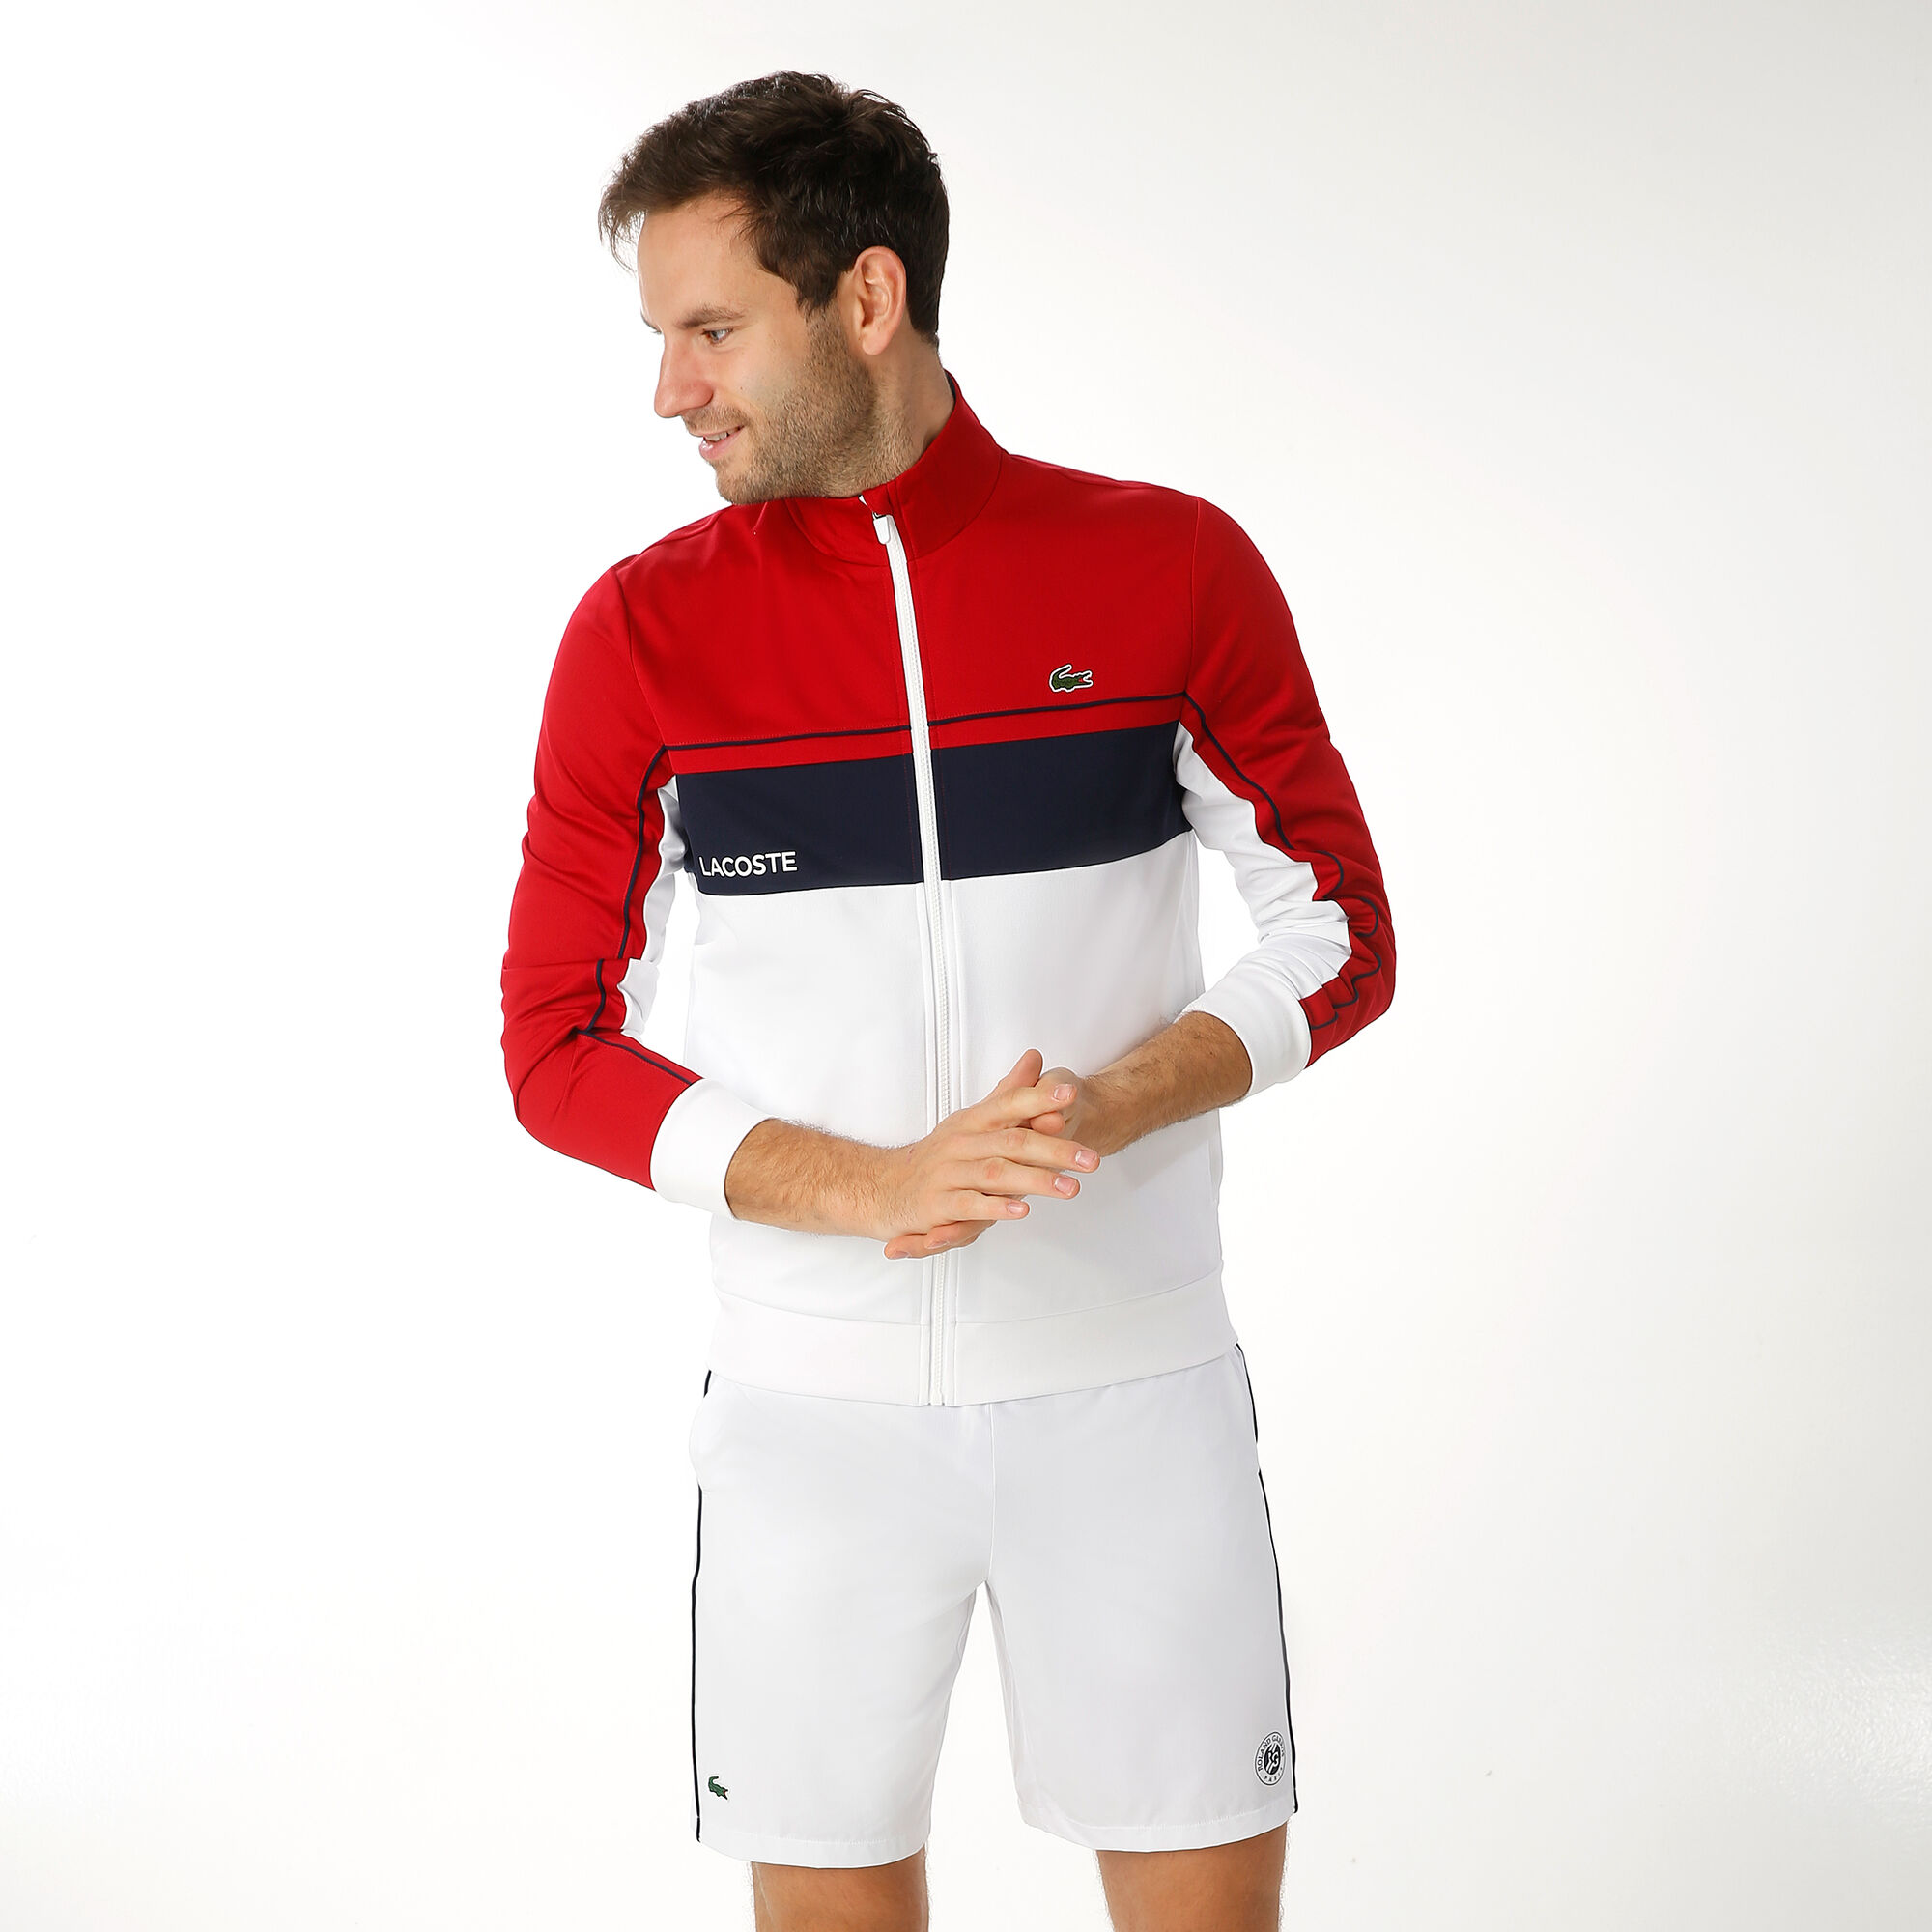 Lacoste Trainingsjacke Herren Weiß, Rot online kaufen | Tennis Point DE